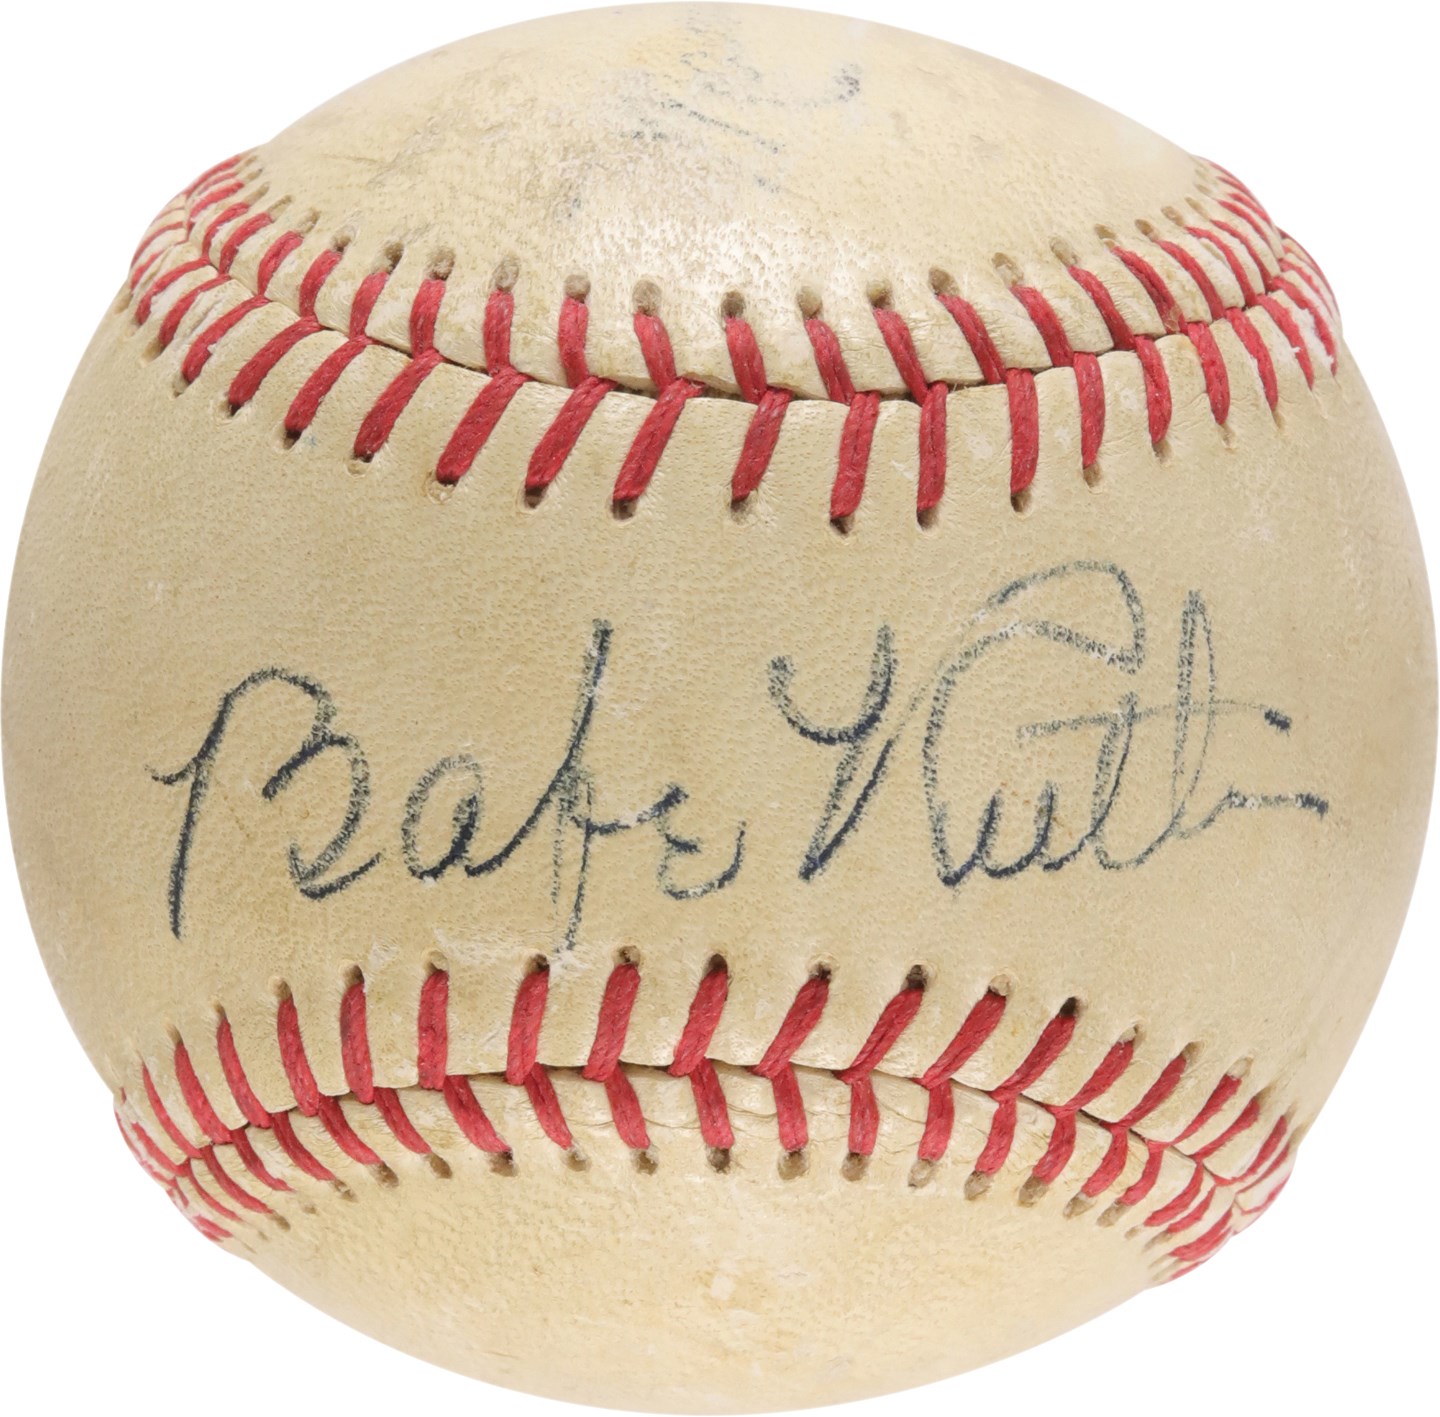 Ruth and Gehrig - Circa 1940s Babe Ruth Single-Signed Baseball (PSA & Beckett)